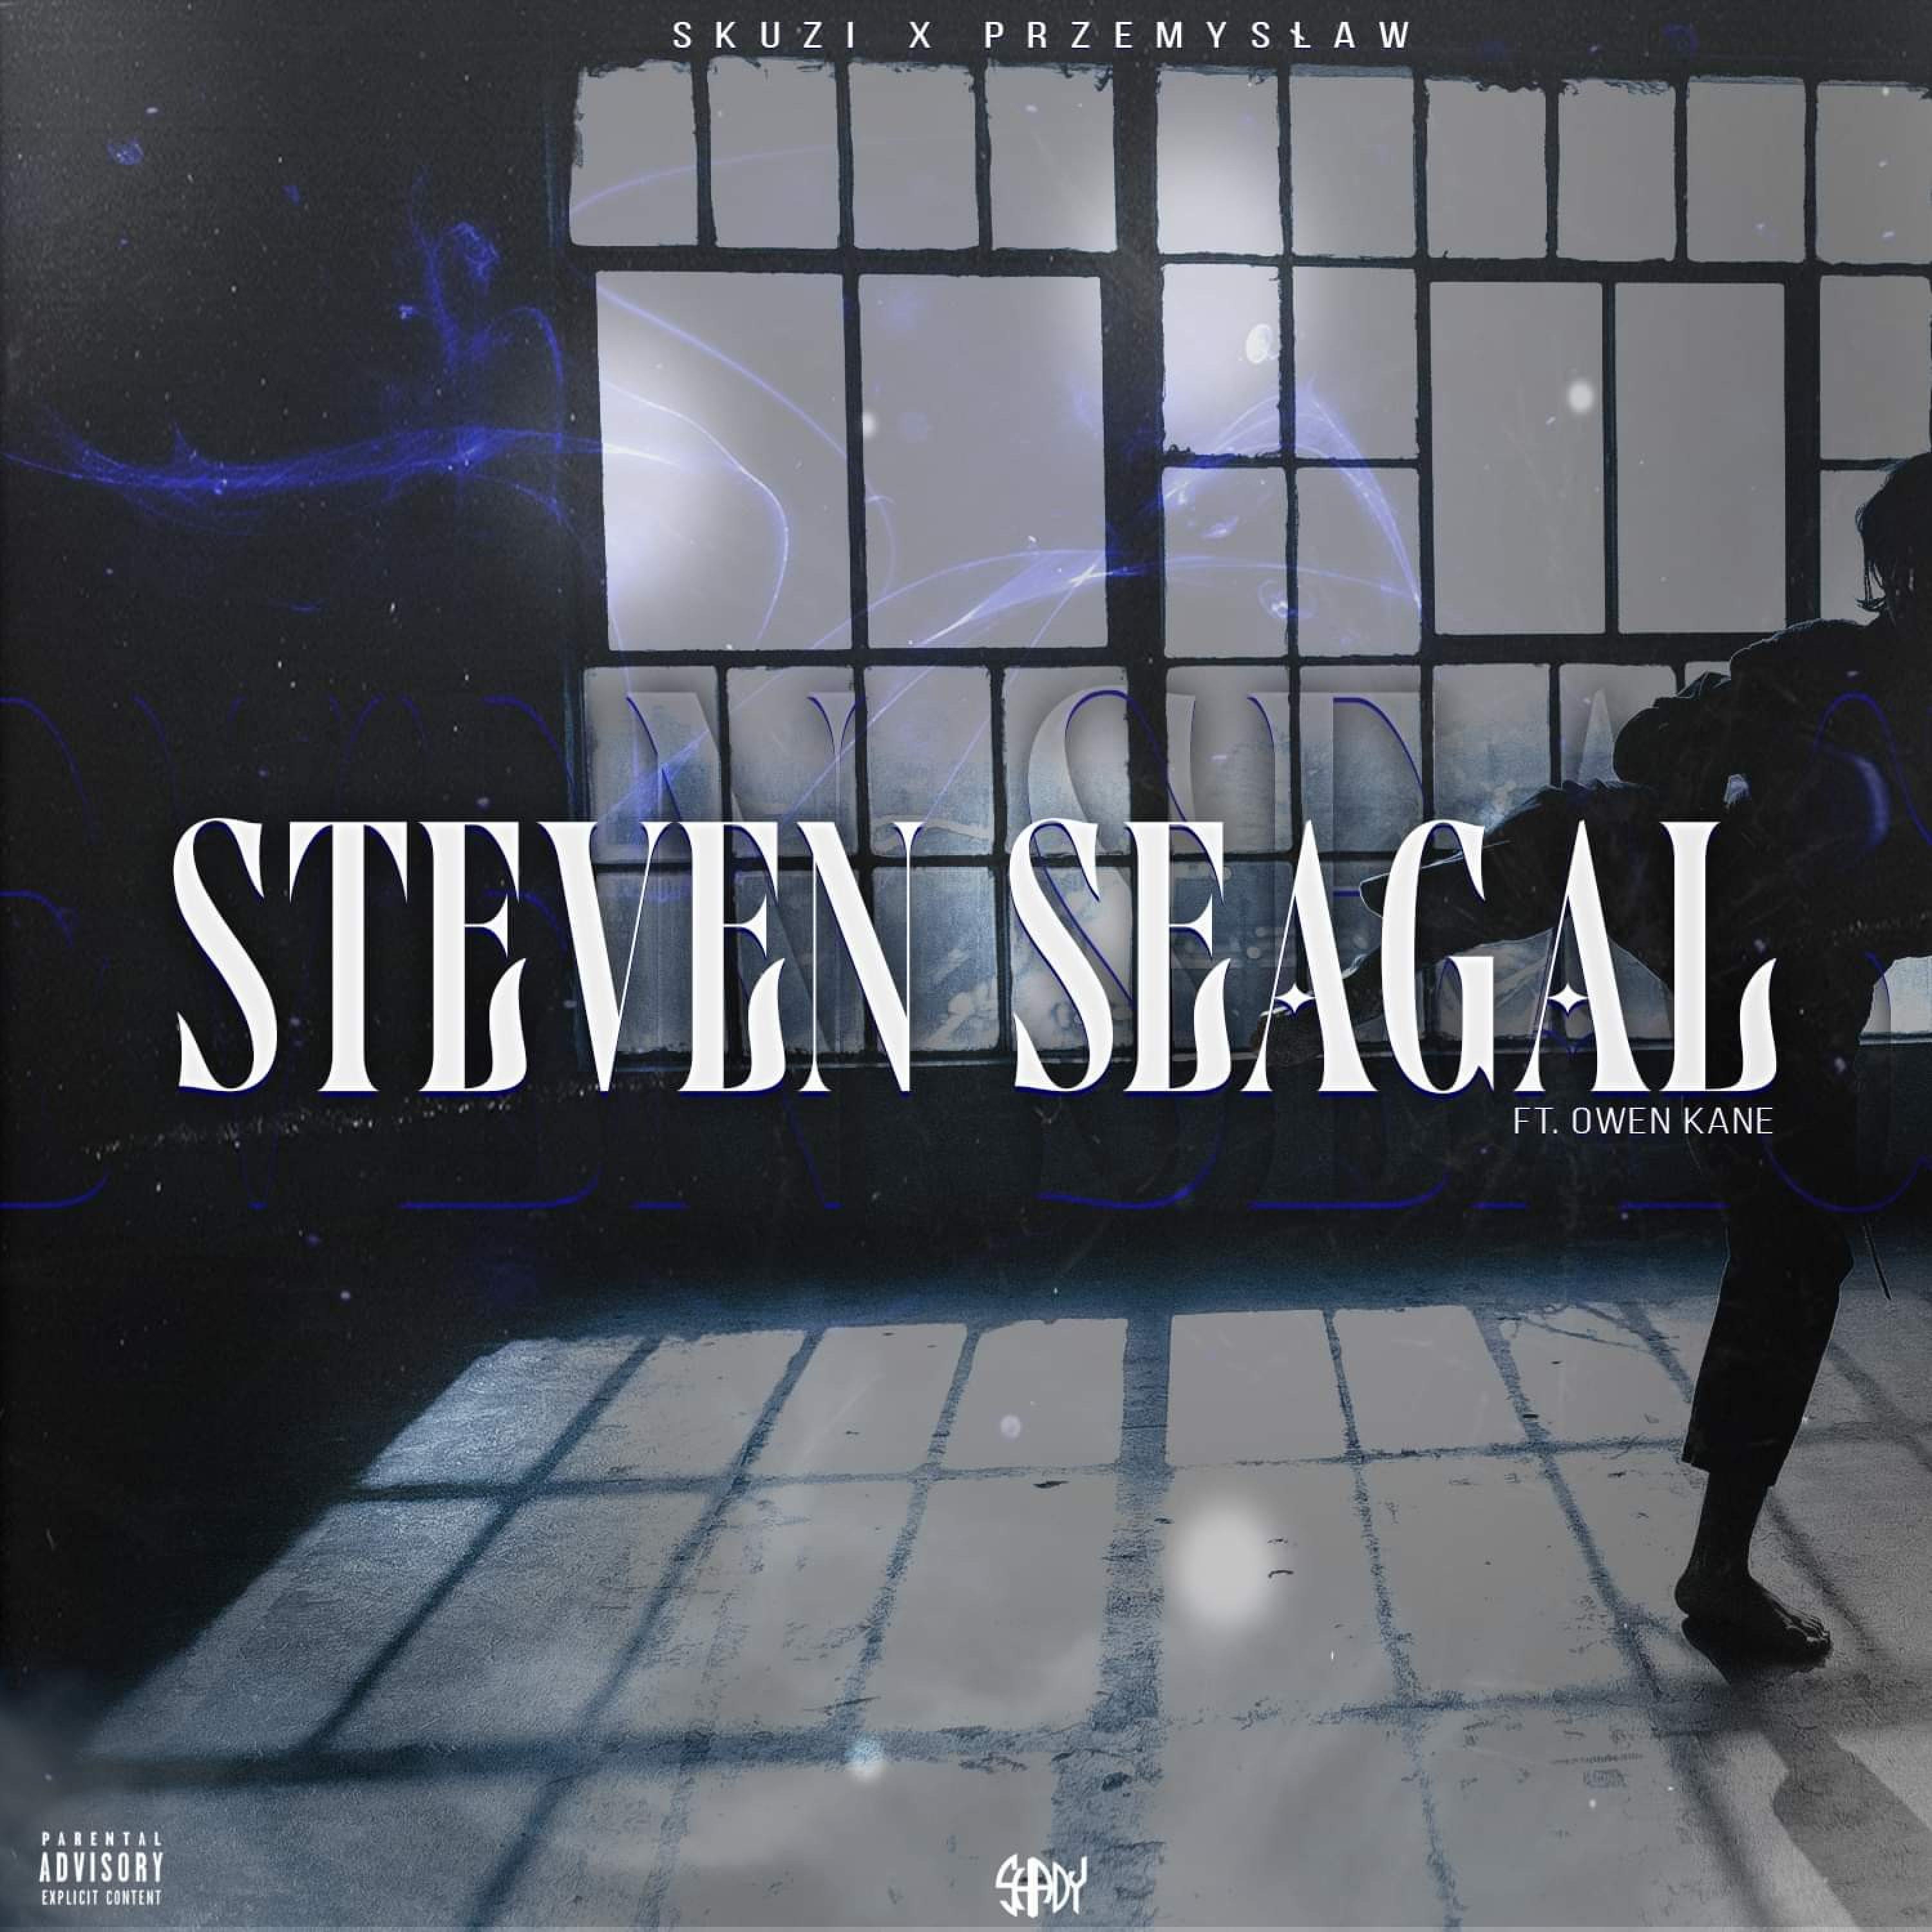 skuzi - Steven Seagal (feat. Przemysław, Owen Kane & WS Label)